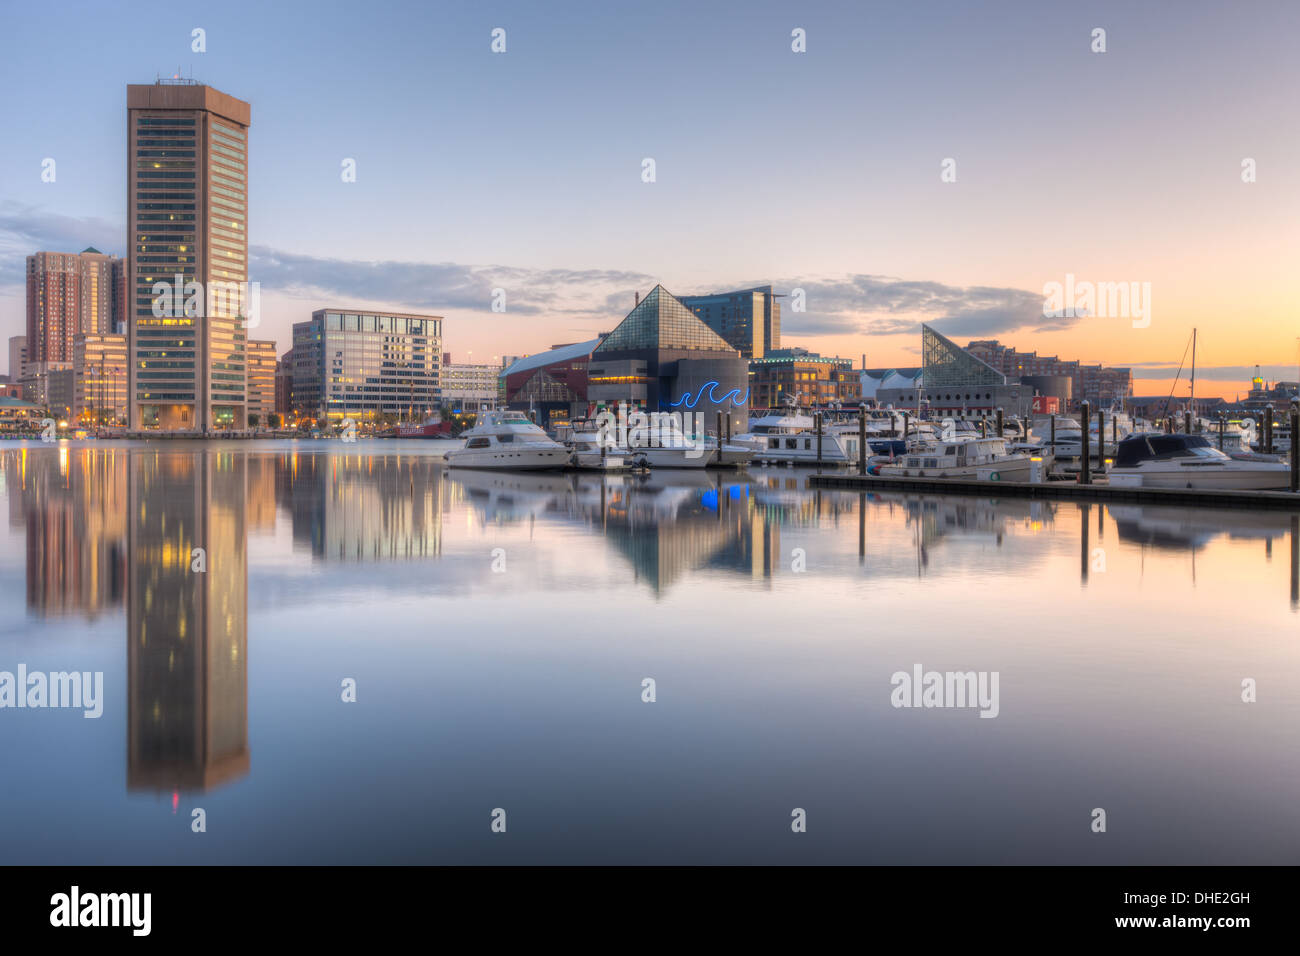 Toits de Baltimore à l'aube, y compris le World Trade Center et l'Aquarium National, se reflétant dans les eaux du port intérieur. Banque D'Images